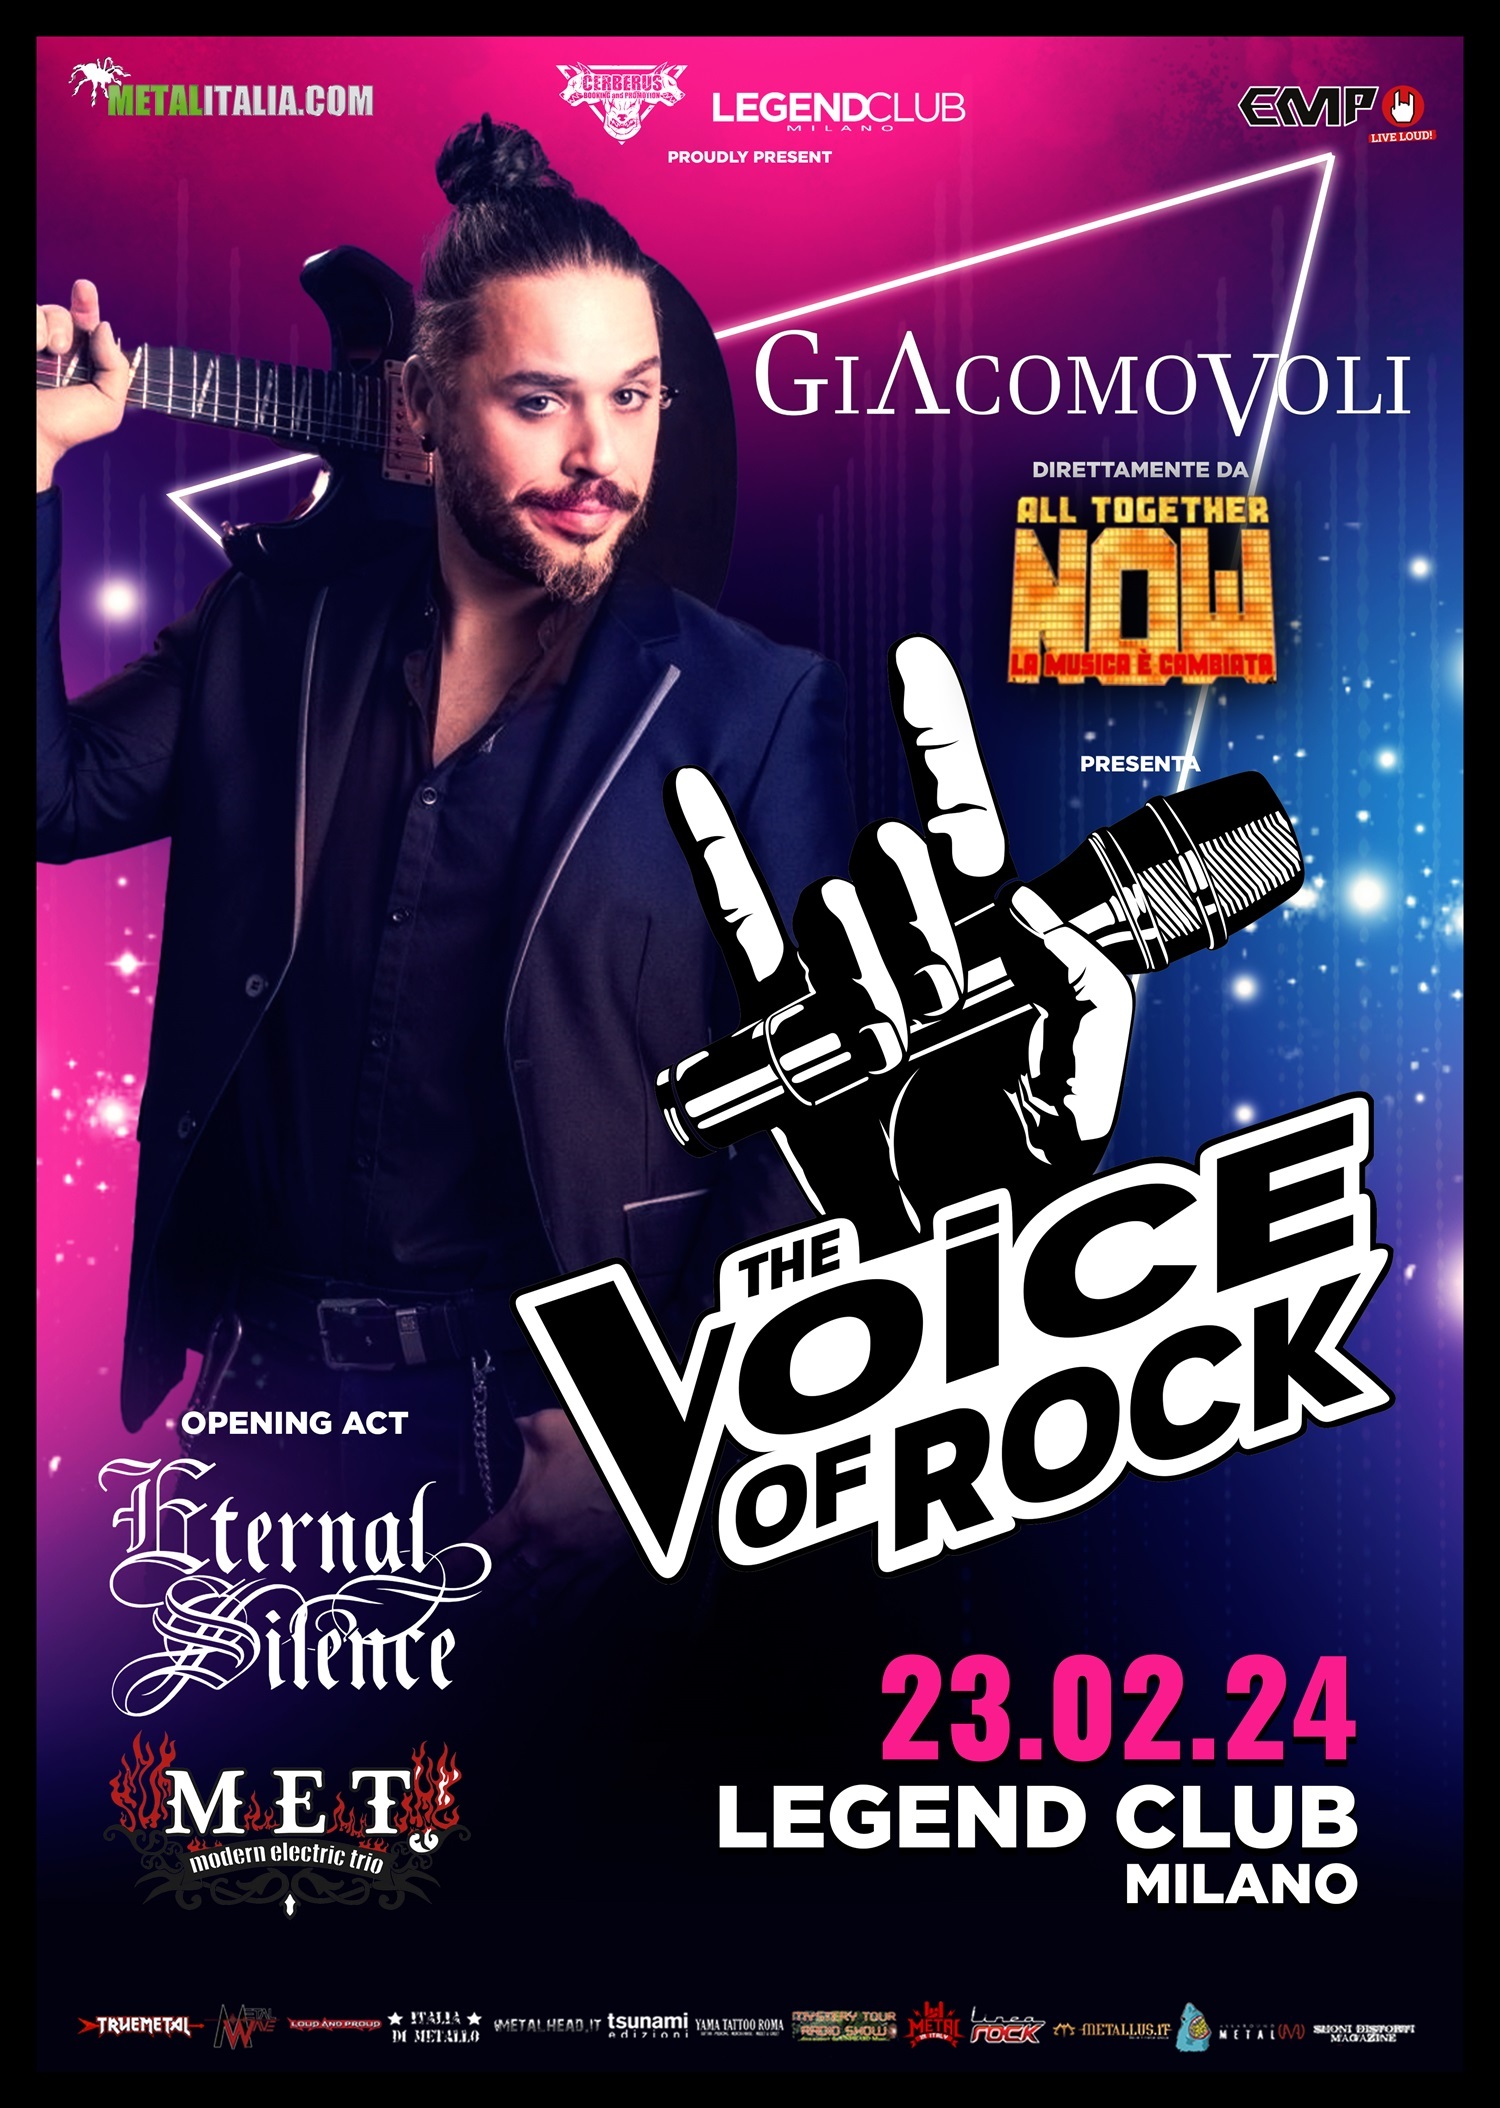 GIACOMO VOLI (RHAPSODY OF FIRE): gli orari della serata al Legend di Milano con il porgetto “The Voice of Rock”.